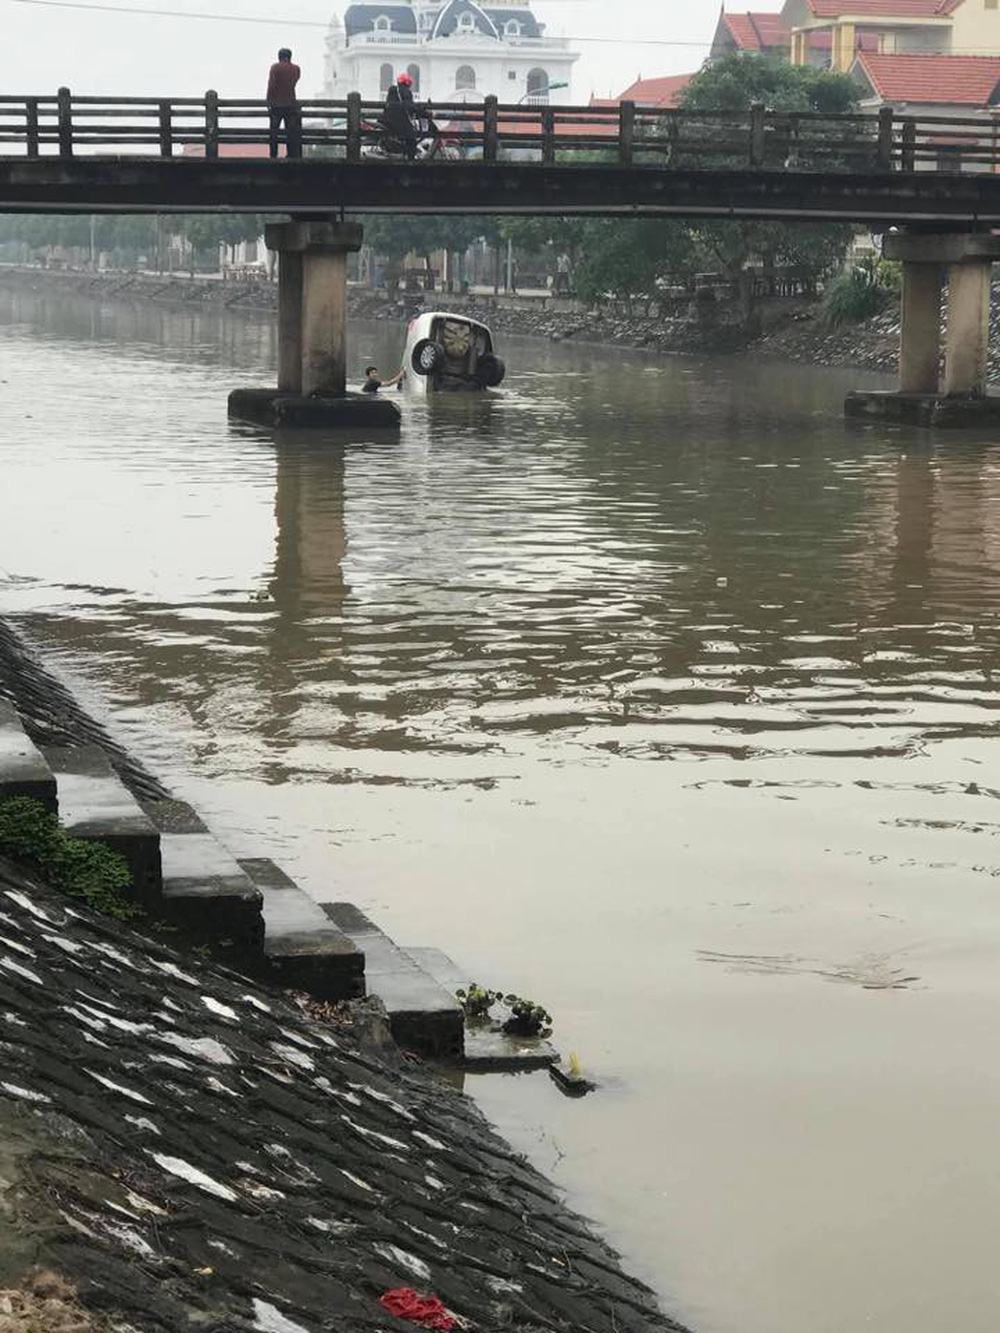 Chiếc ô tô ngụp lặn dưới sông, hình ảnh đang được chia sẻ nhiều nhất ngày thứ 6 - Ảnh 1.